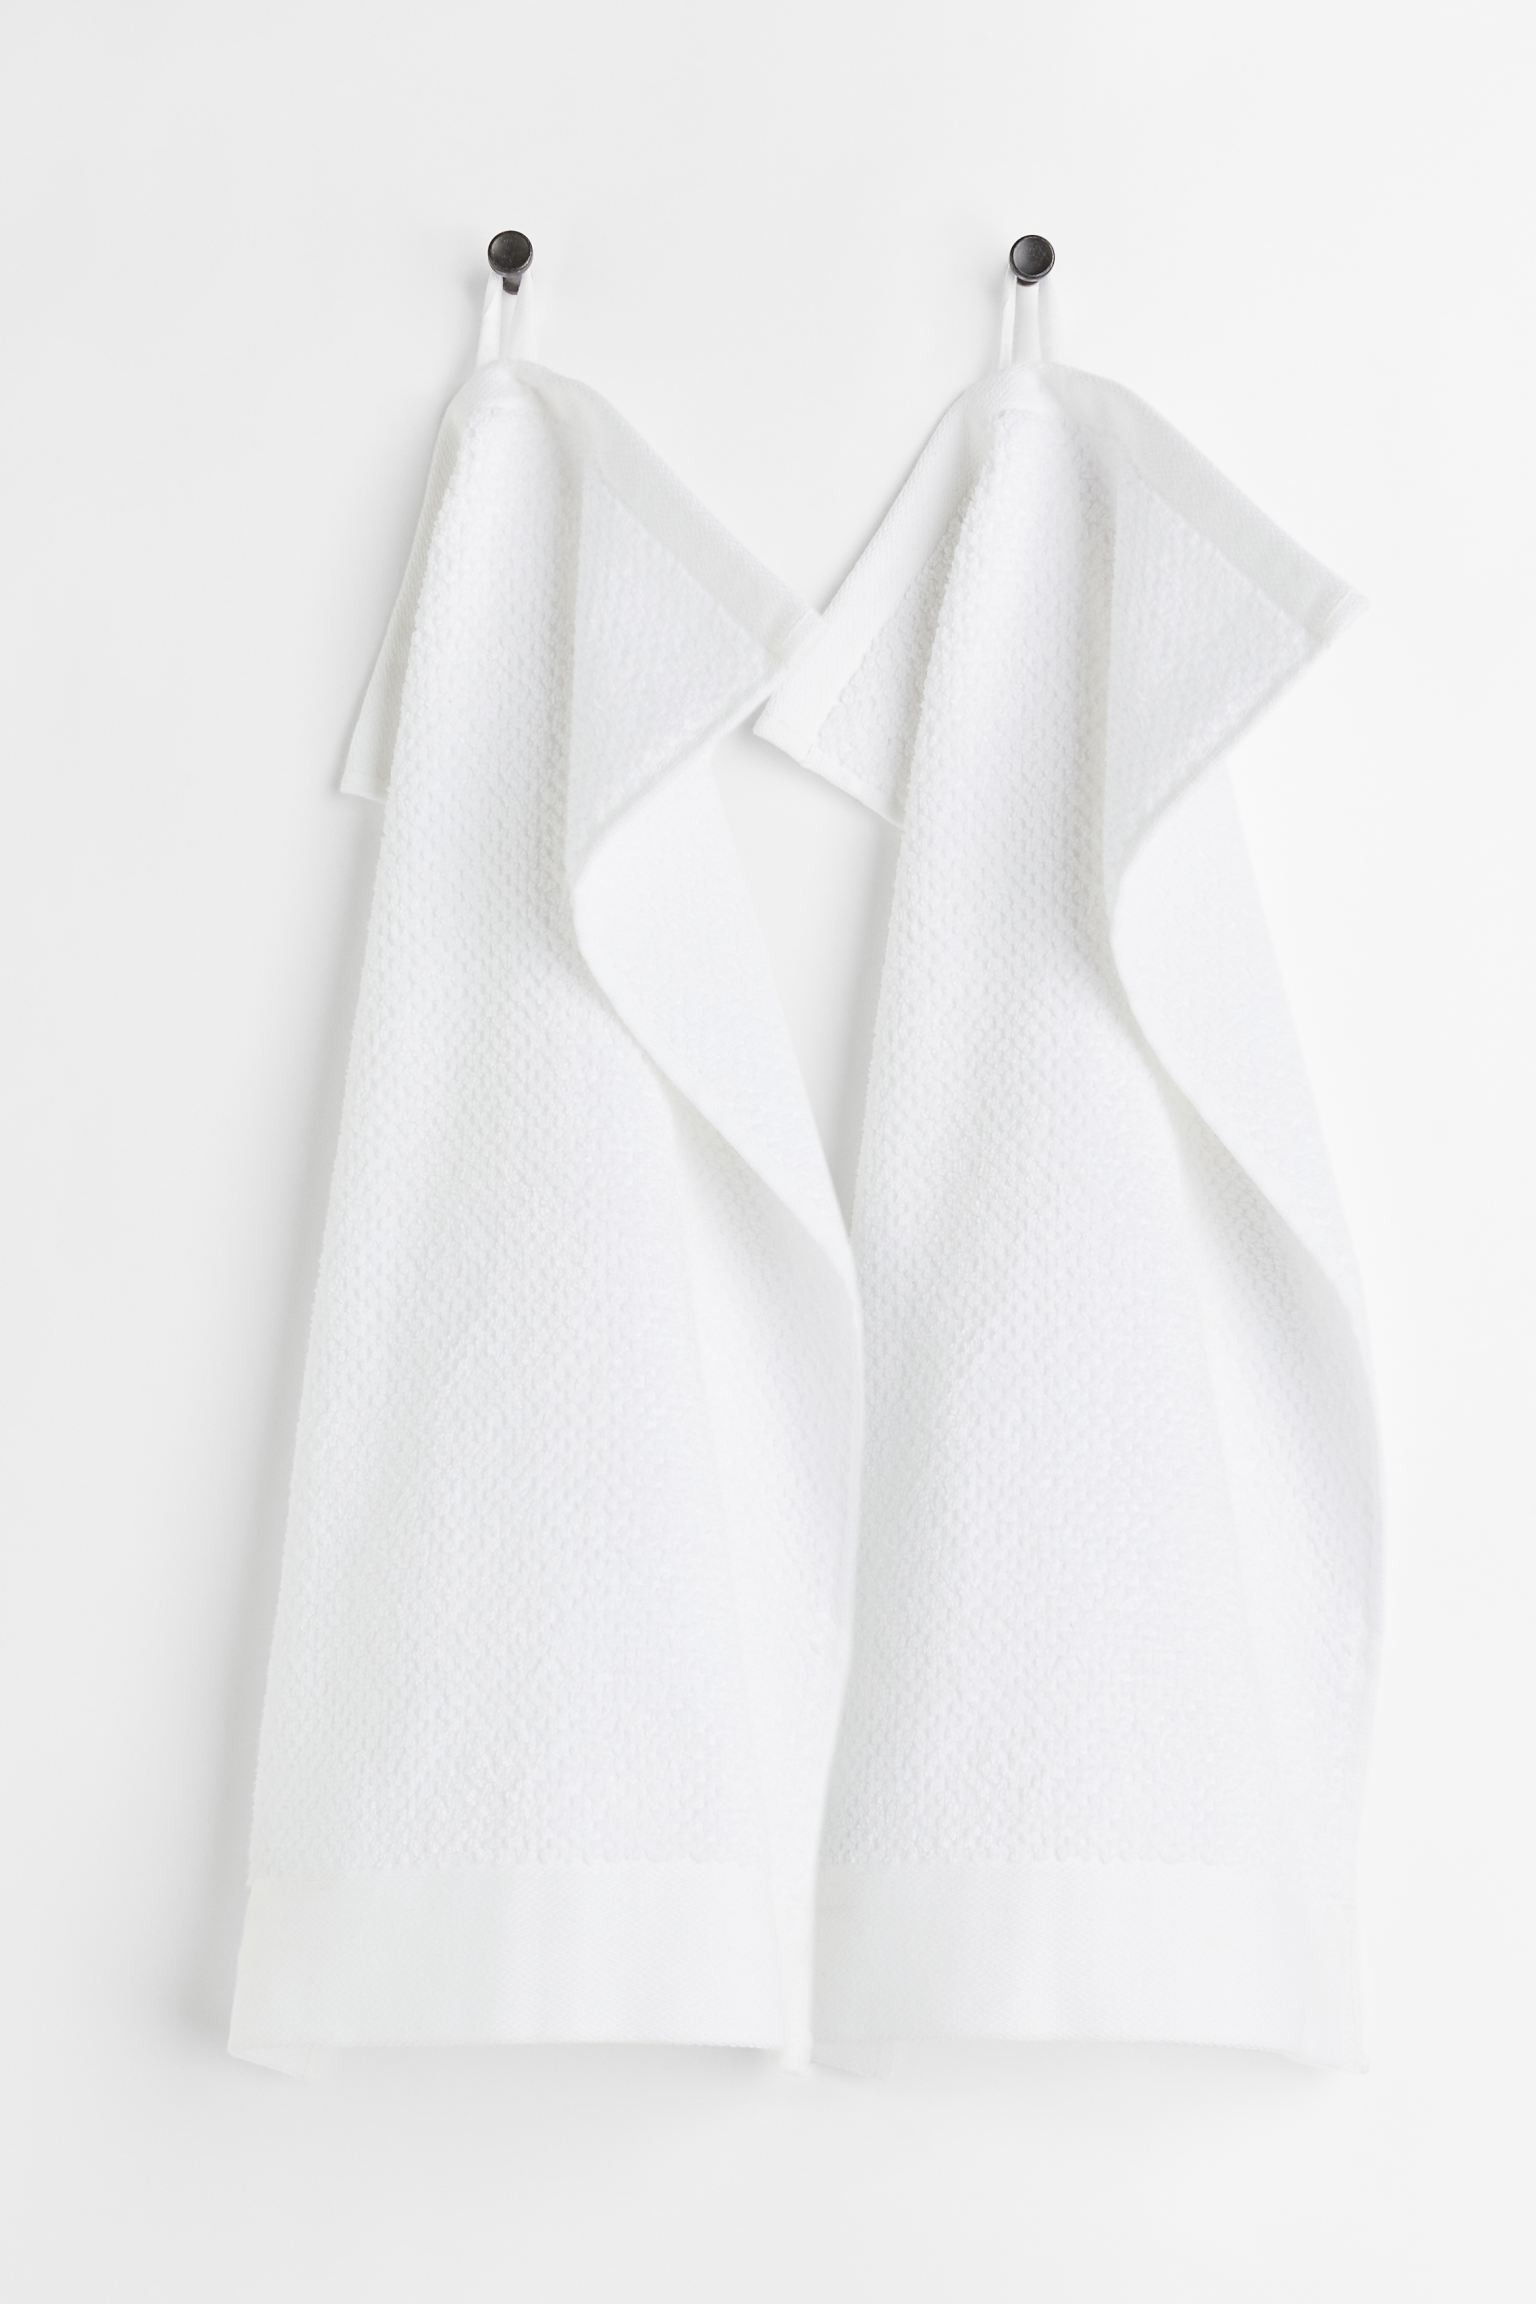 H&M Home Махровое гостевое полотенце, 2 шт., Белый, 30x50 1097511010 | 1097511010